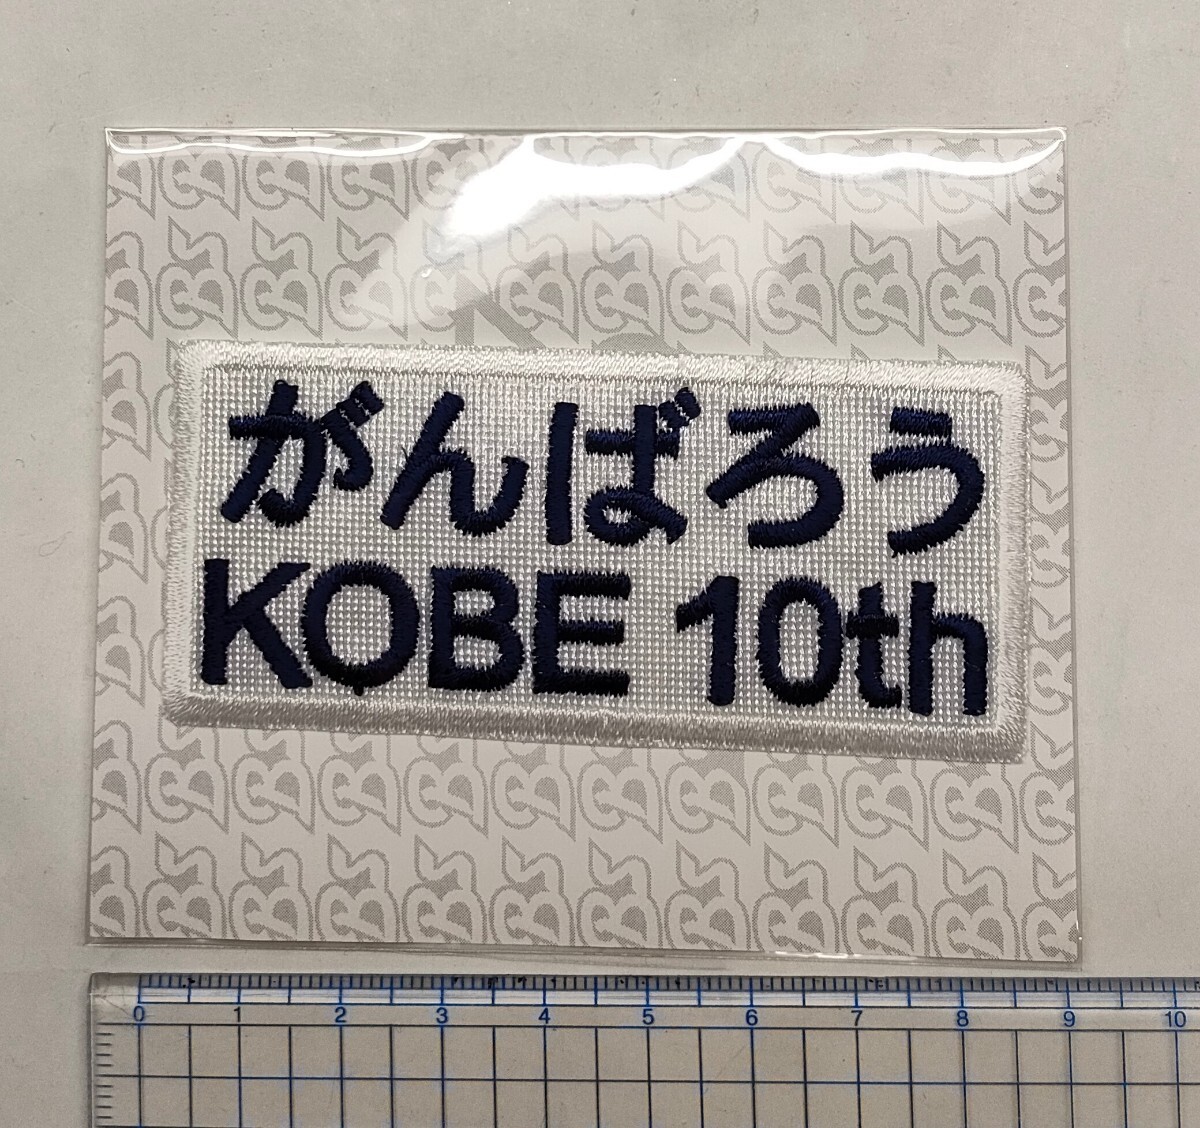 がんばろうKOBE 10th ワッペン オリックス・バファローズ2005 神戸用ユニフォーム の画像1